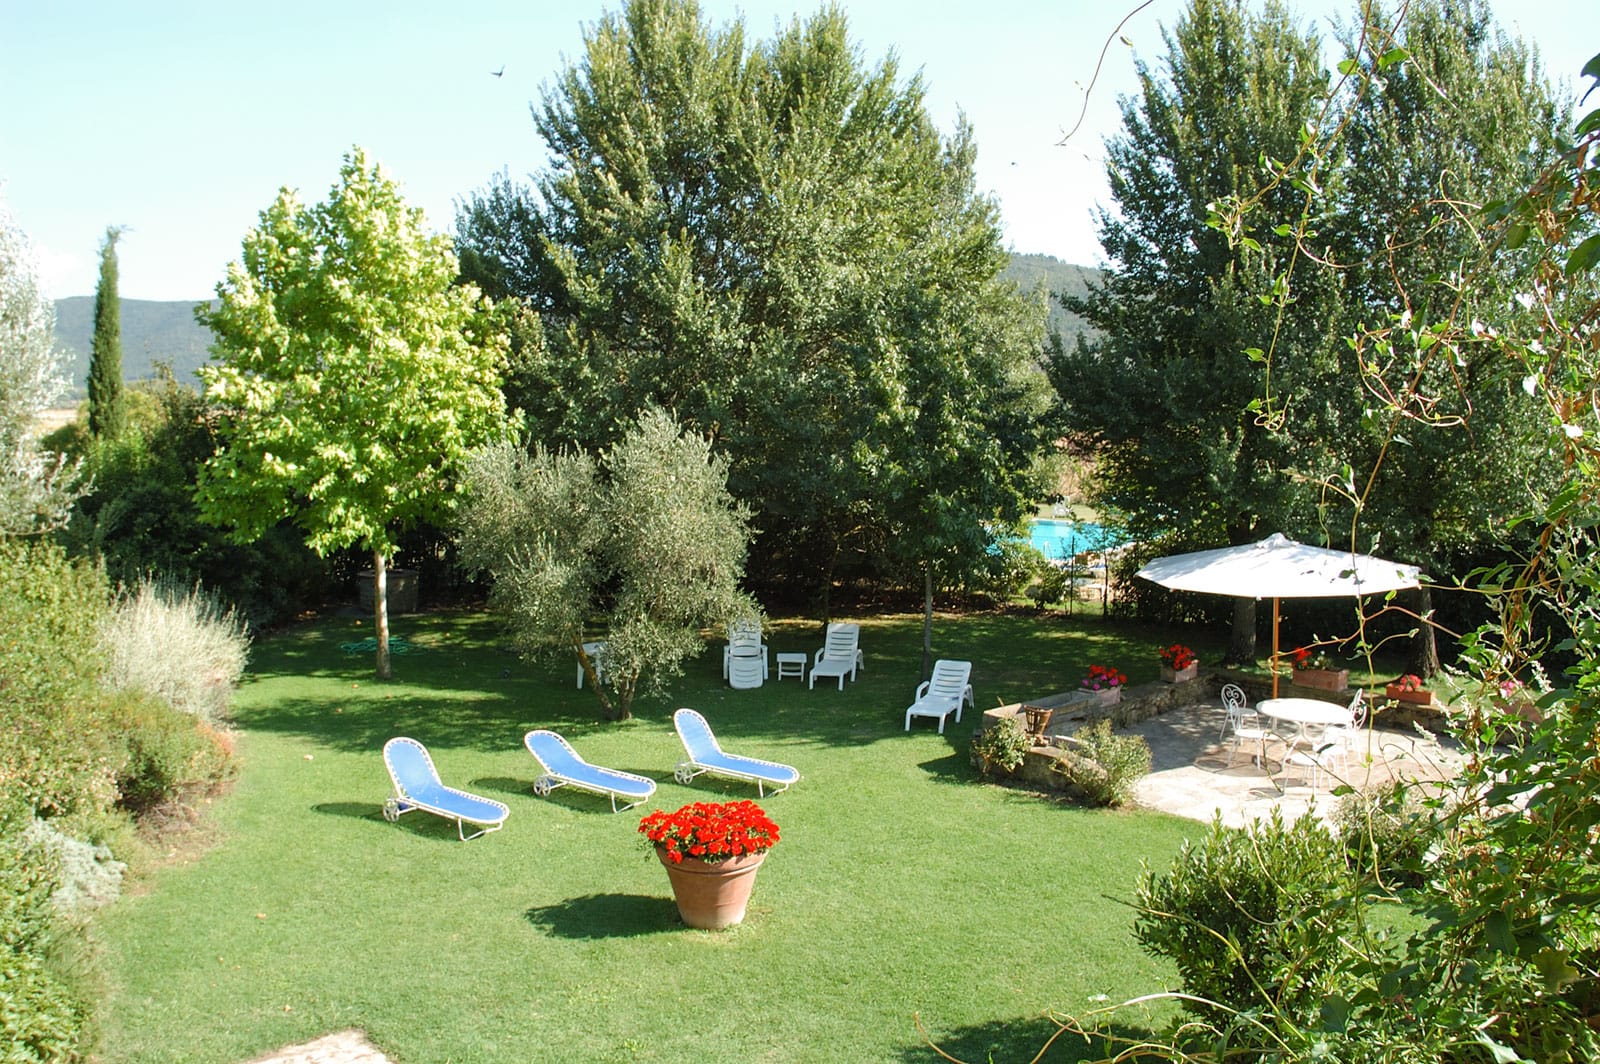 Casa La Bozza: our villas in Cortona | Fontelunga farmhouse